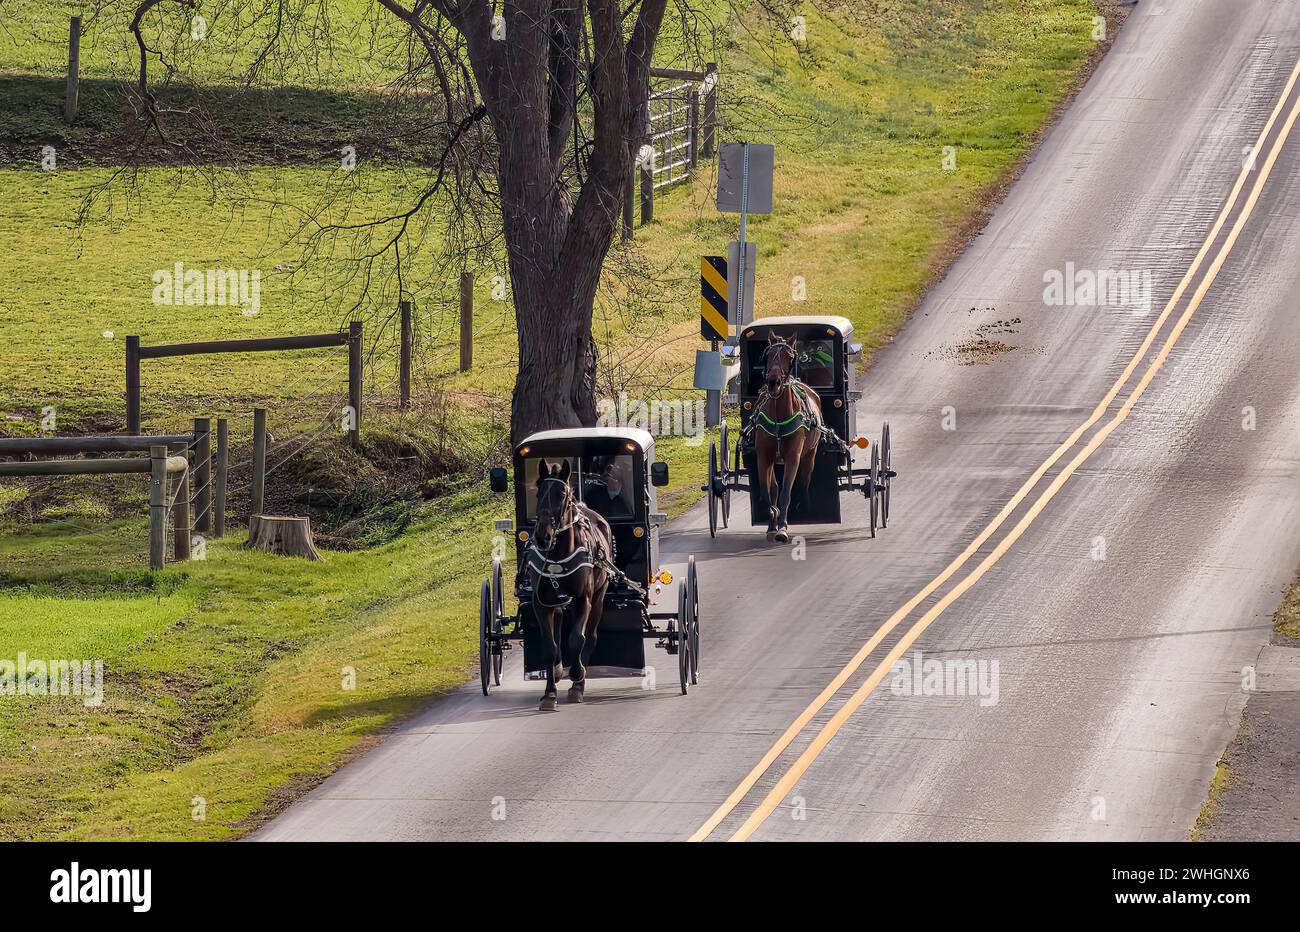 Blick auf zwei Amish Horse und Buggies, die auf einer Landstraße durch Farmland fahren Stockfoto